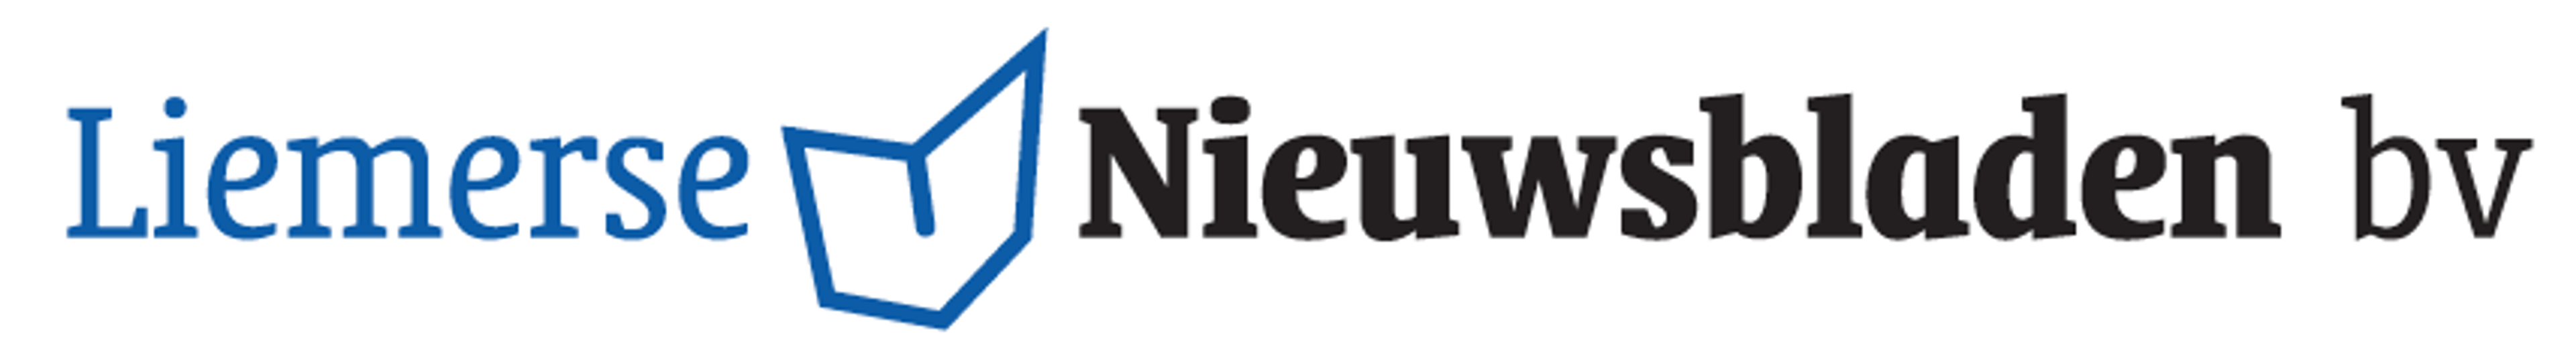 Liemerse Nieuwsbladen lanceert drie huis-aan-huisbladen